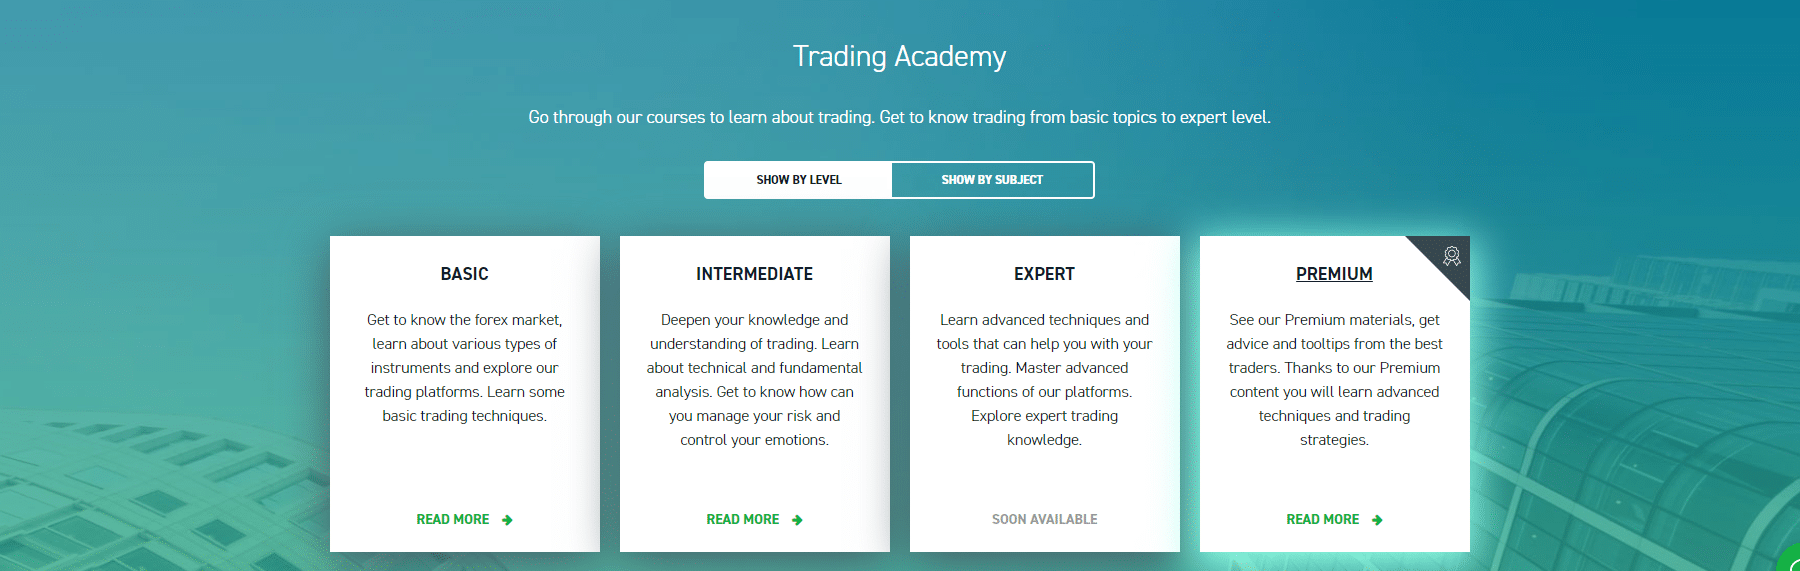 Centro di formazione professionale per principianti e trader avanzati